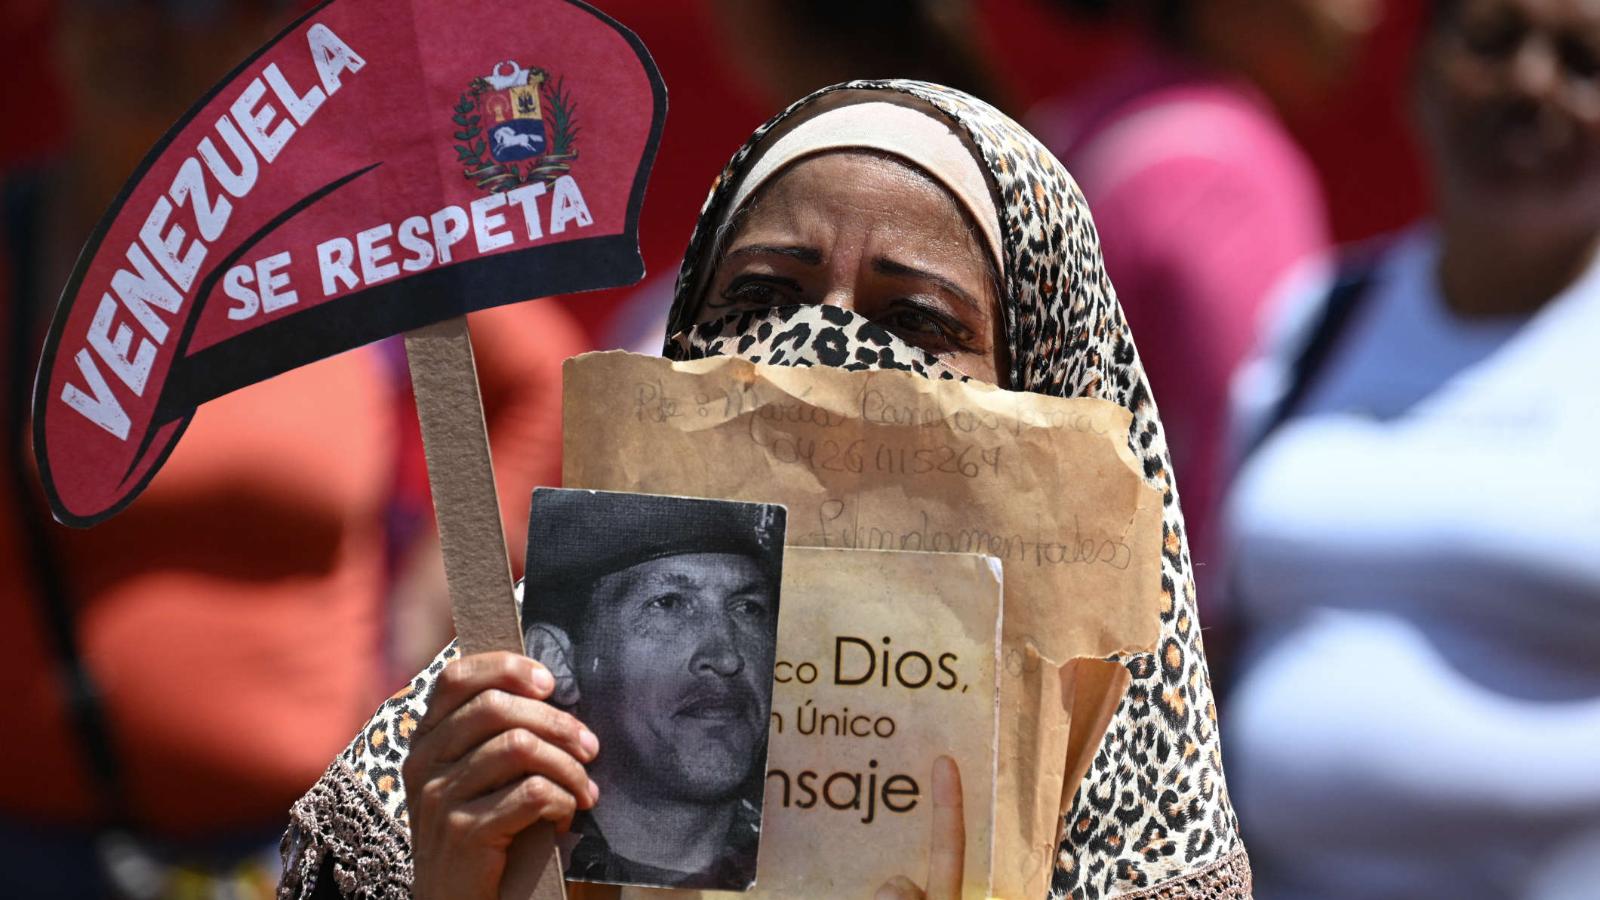 Hay una falsa narrativa en Venezuela de que se puede llegar a un
acuerdo con el régimen, según experto